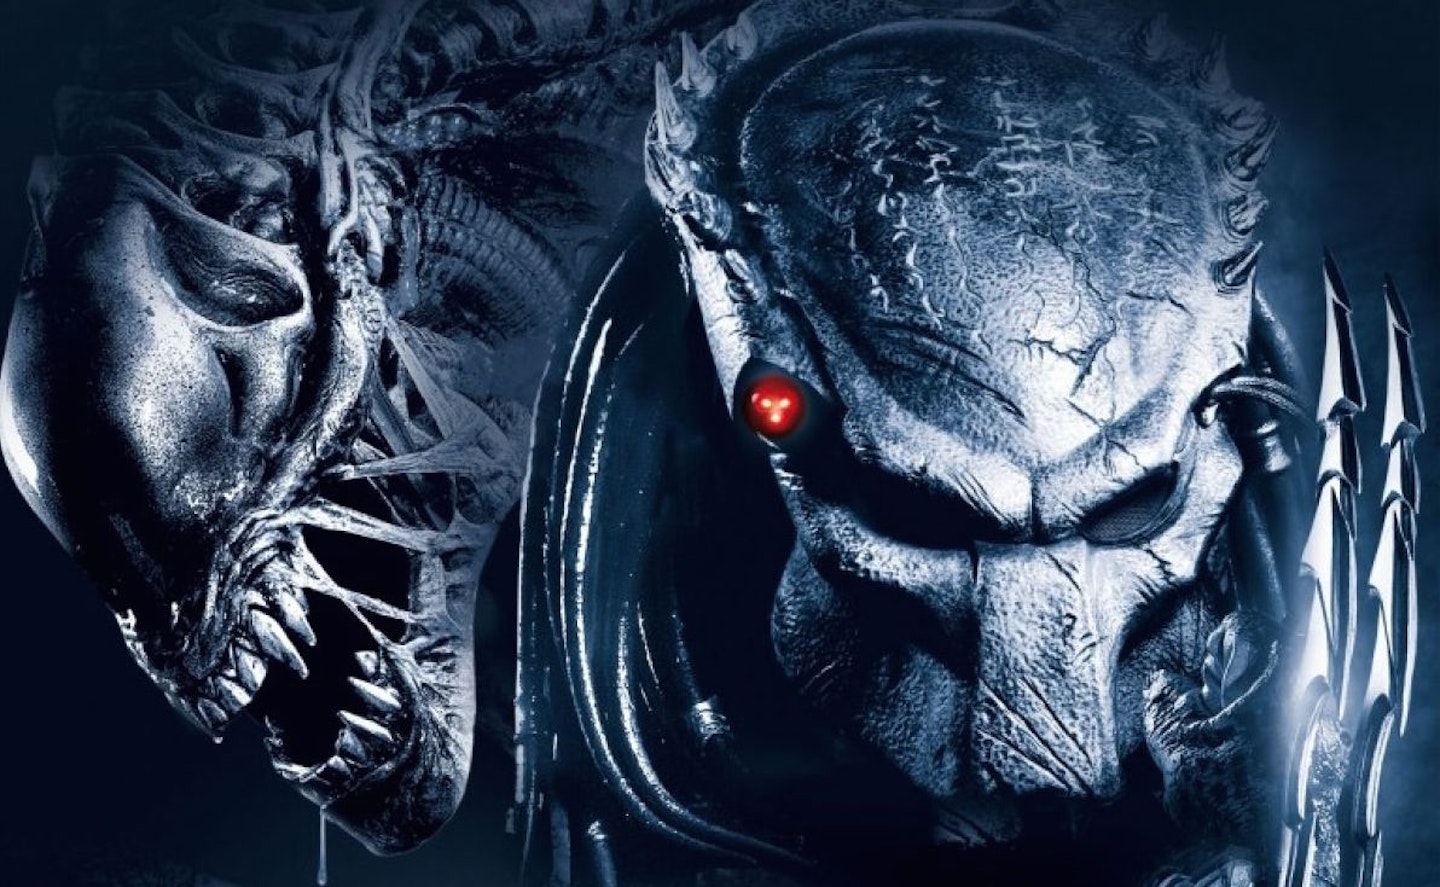 Alien V Predator: Requiem poster (crop)